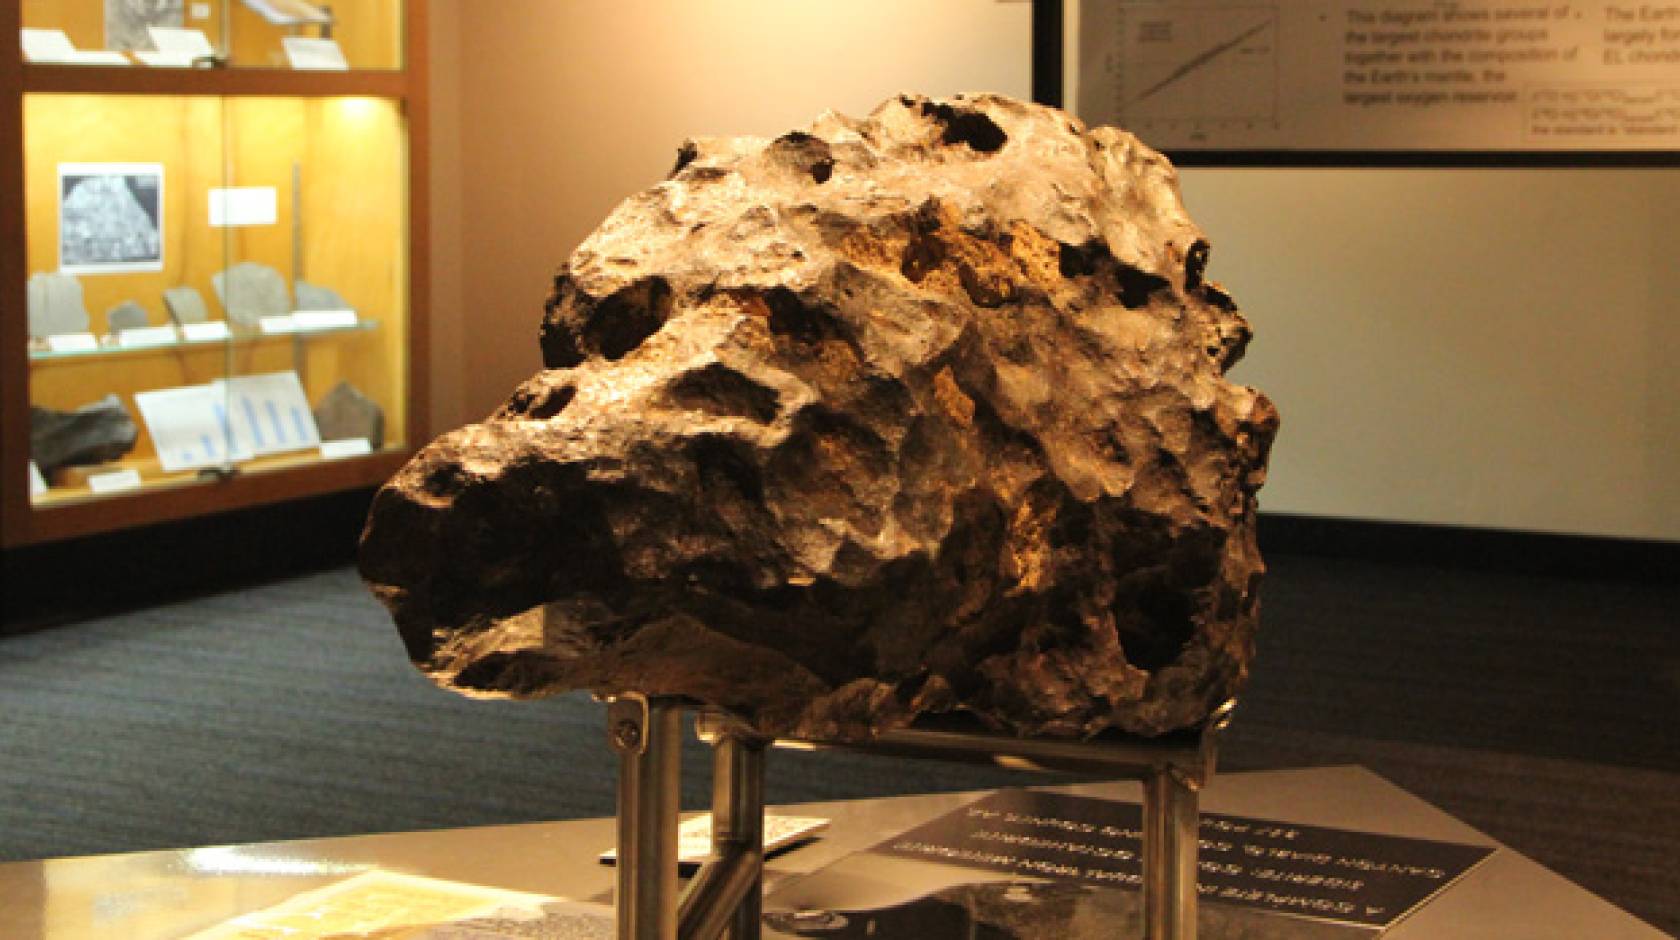 Arizona meteorite